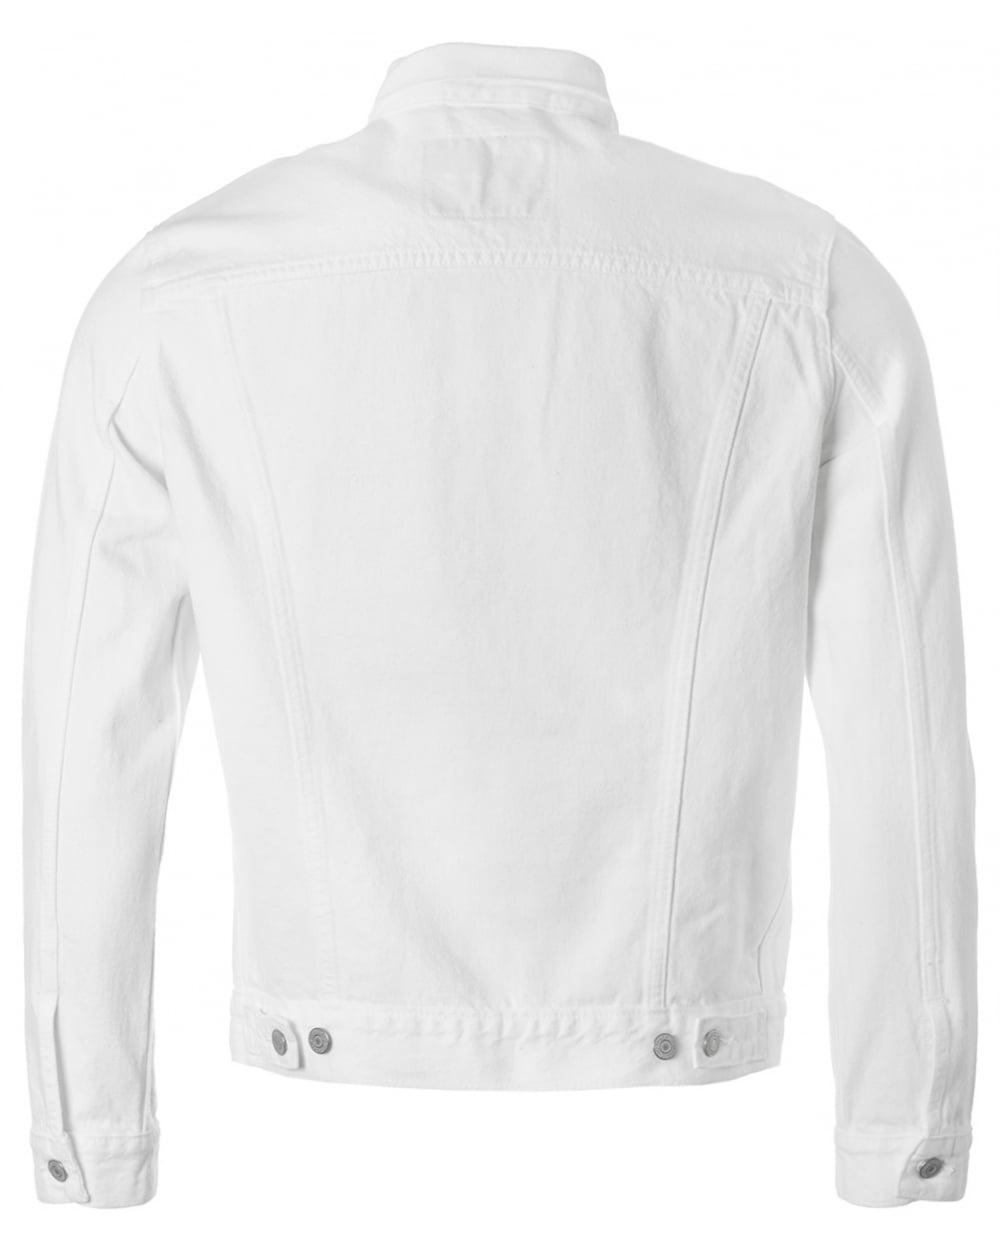 Levi's Denim Trucker Jacket in White for Men - Lyst